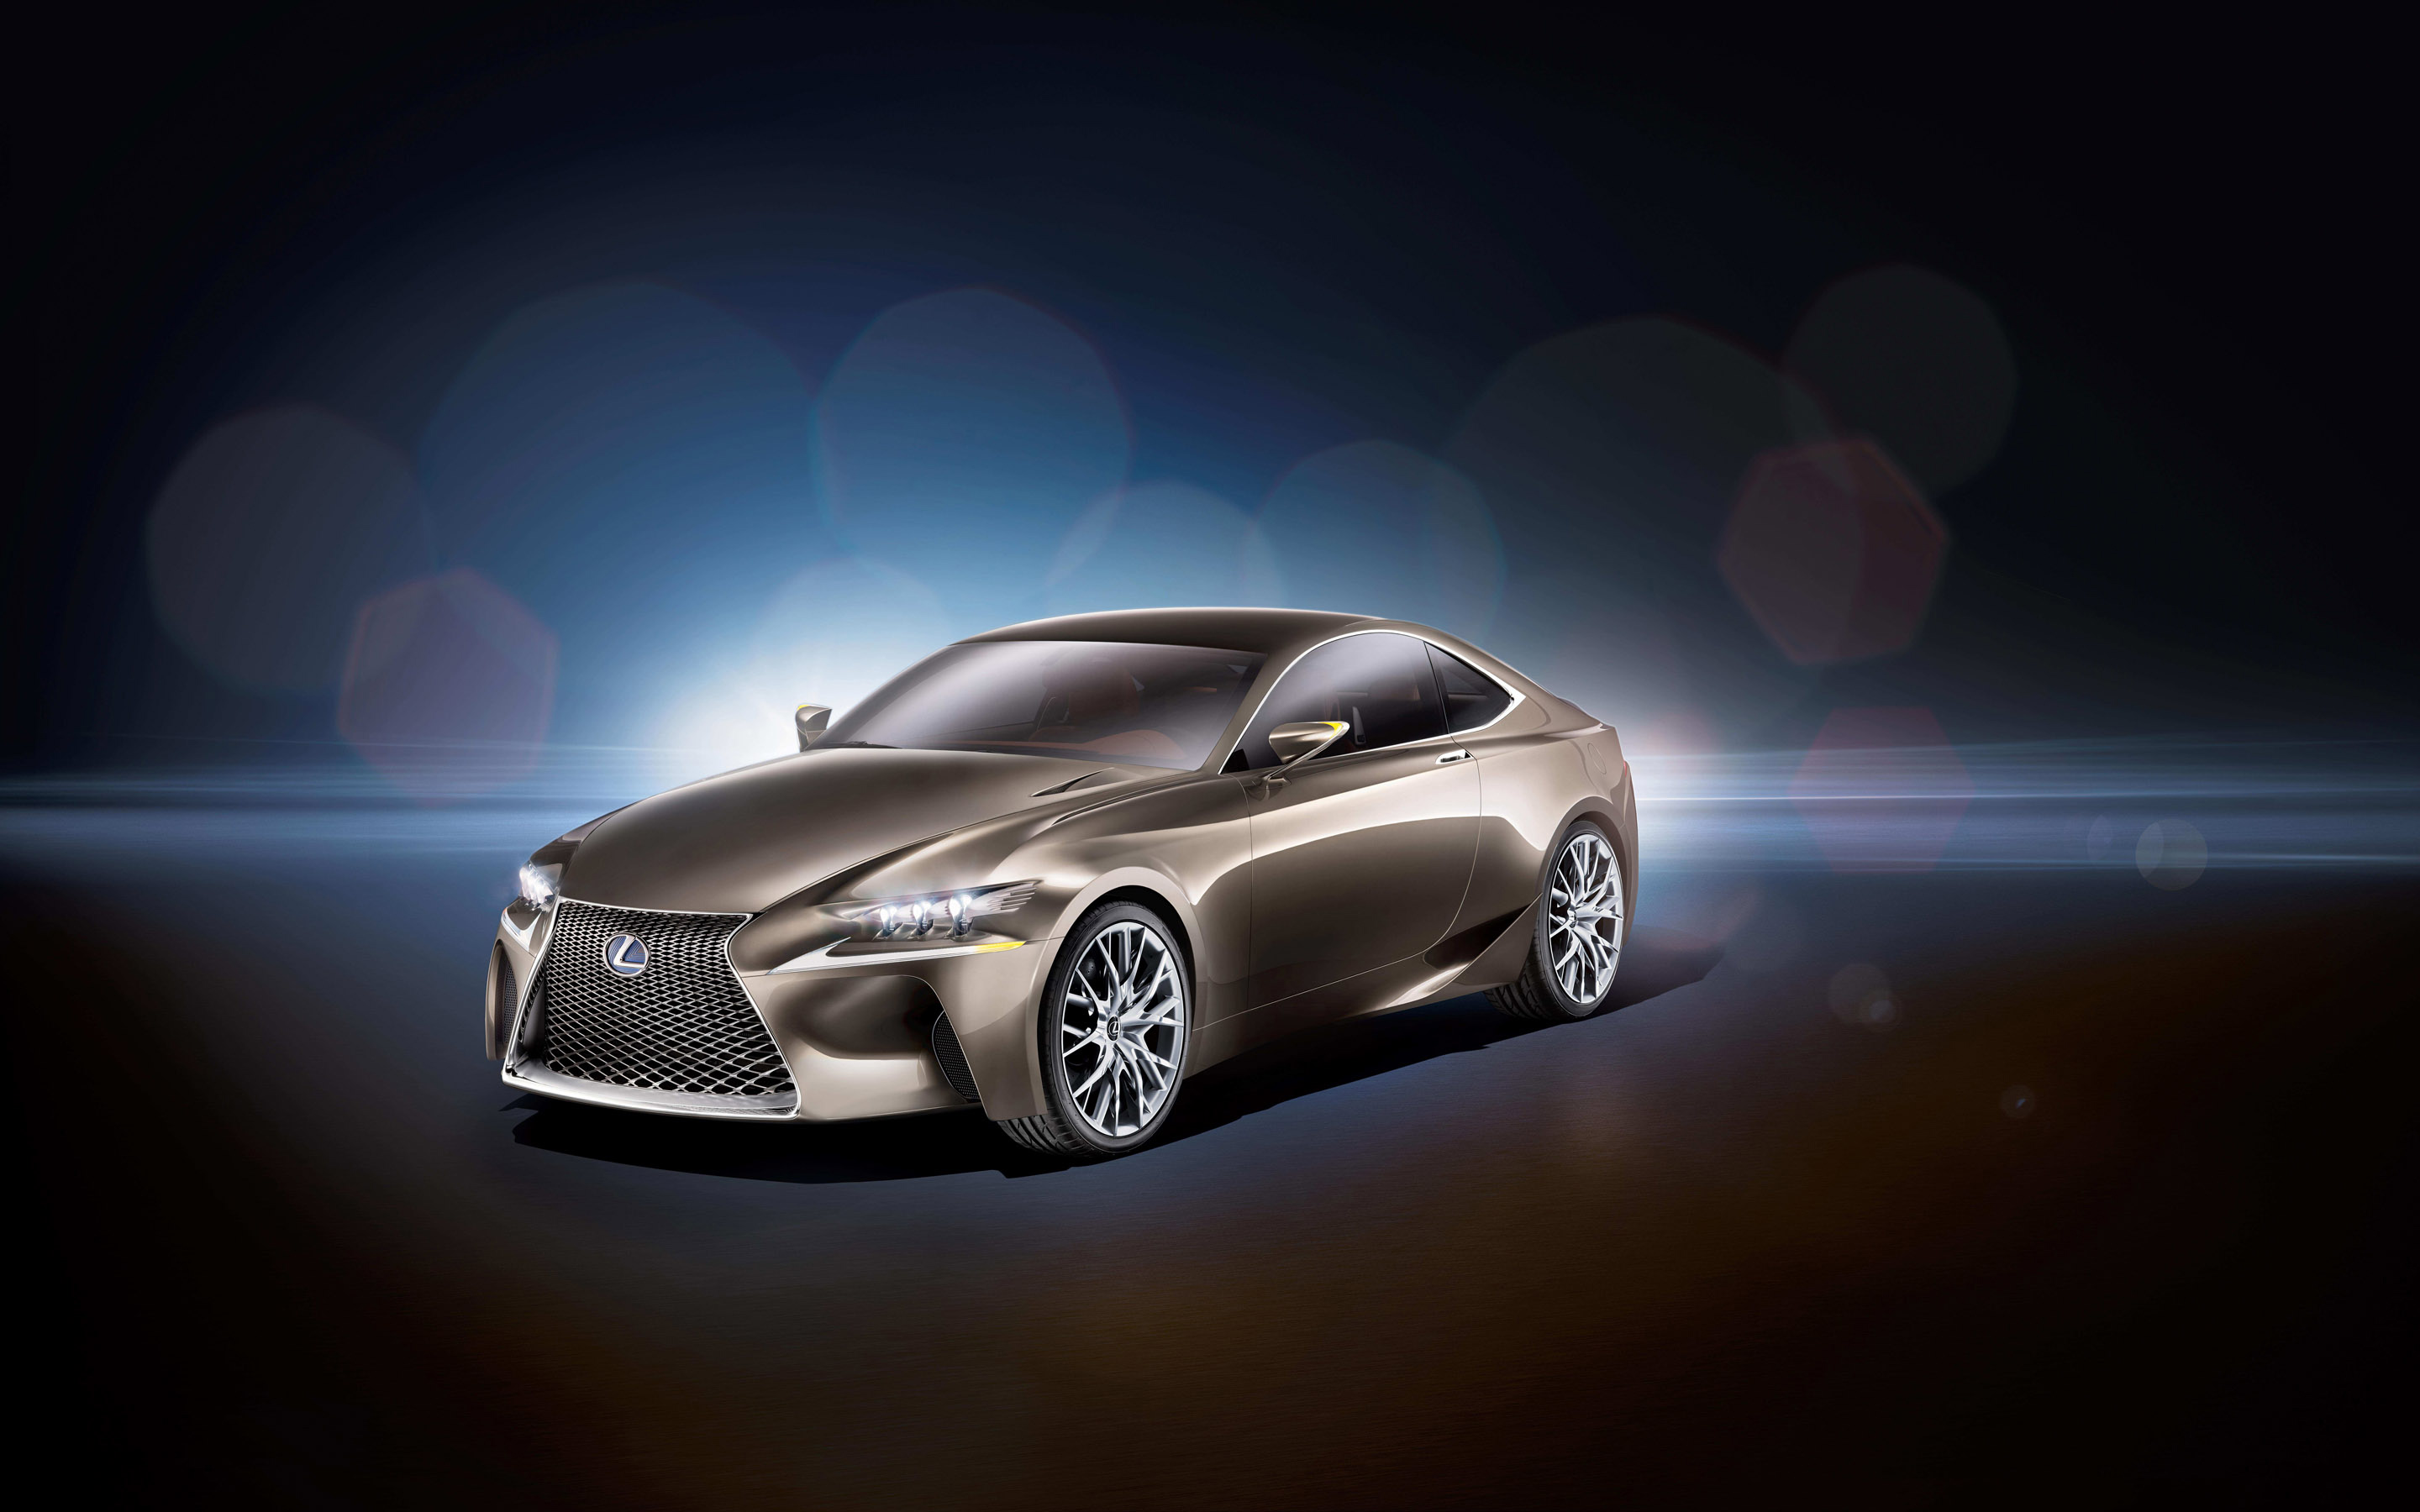 Télécharger des fonds d'écran Concept Lexus Lf Cc HD